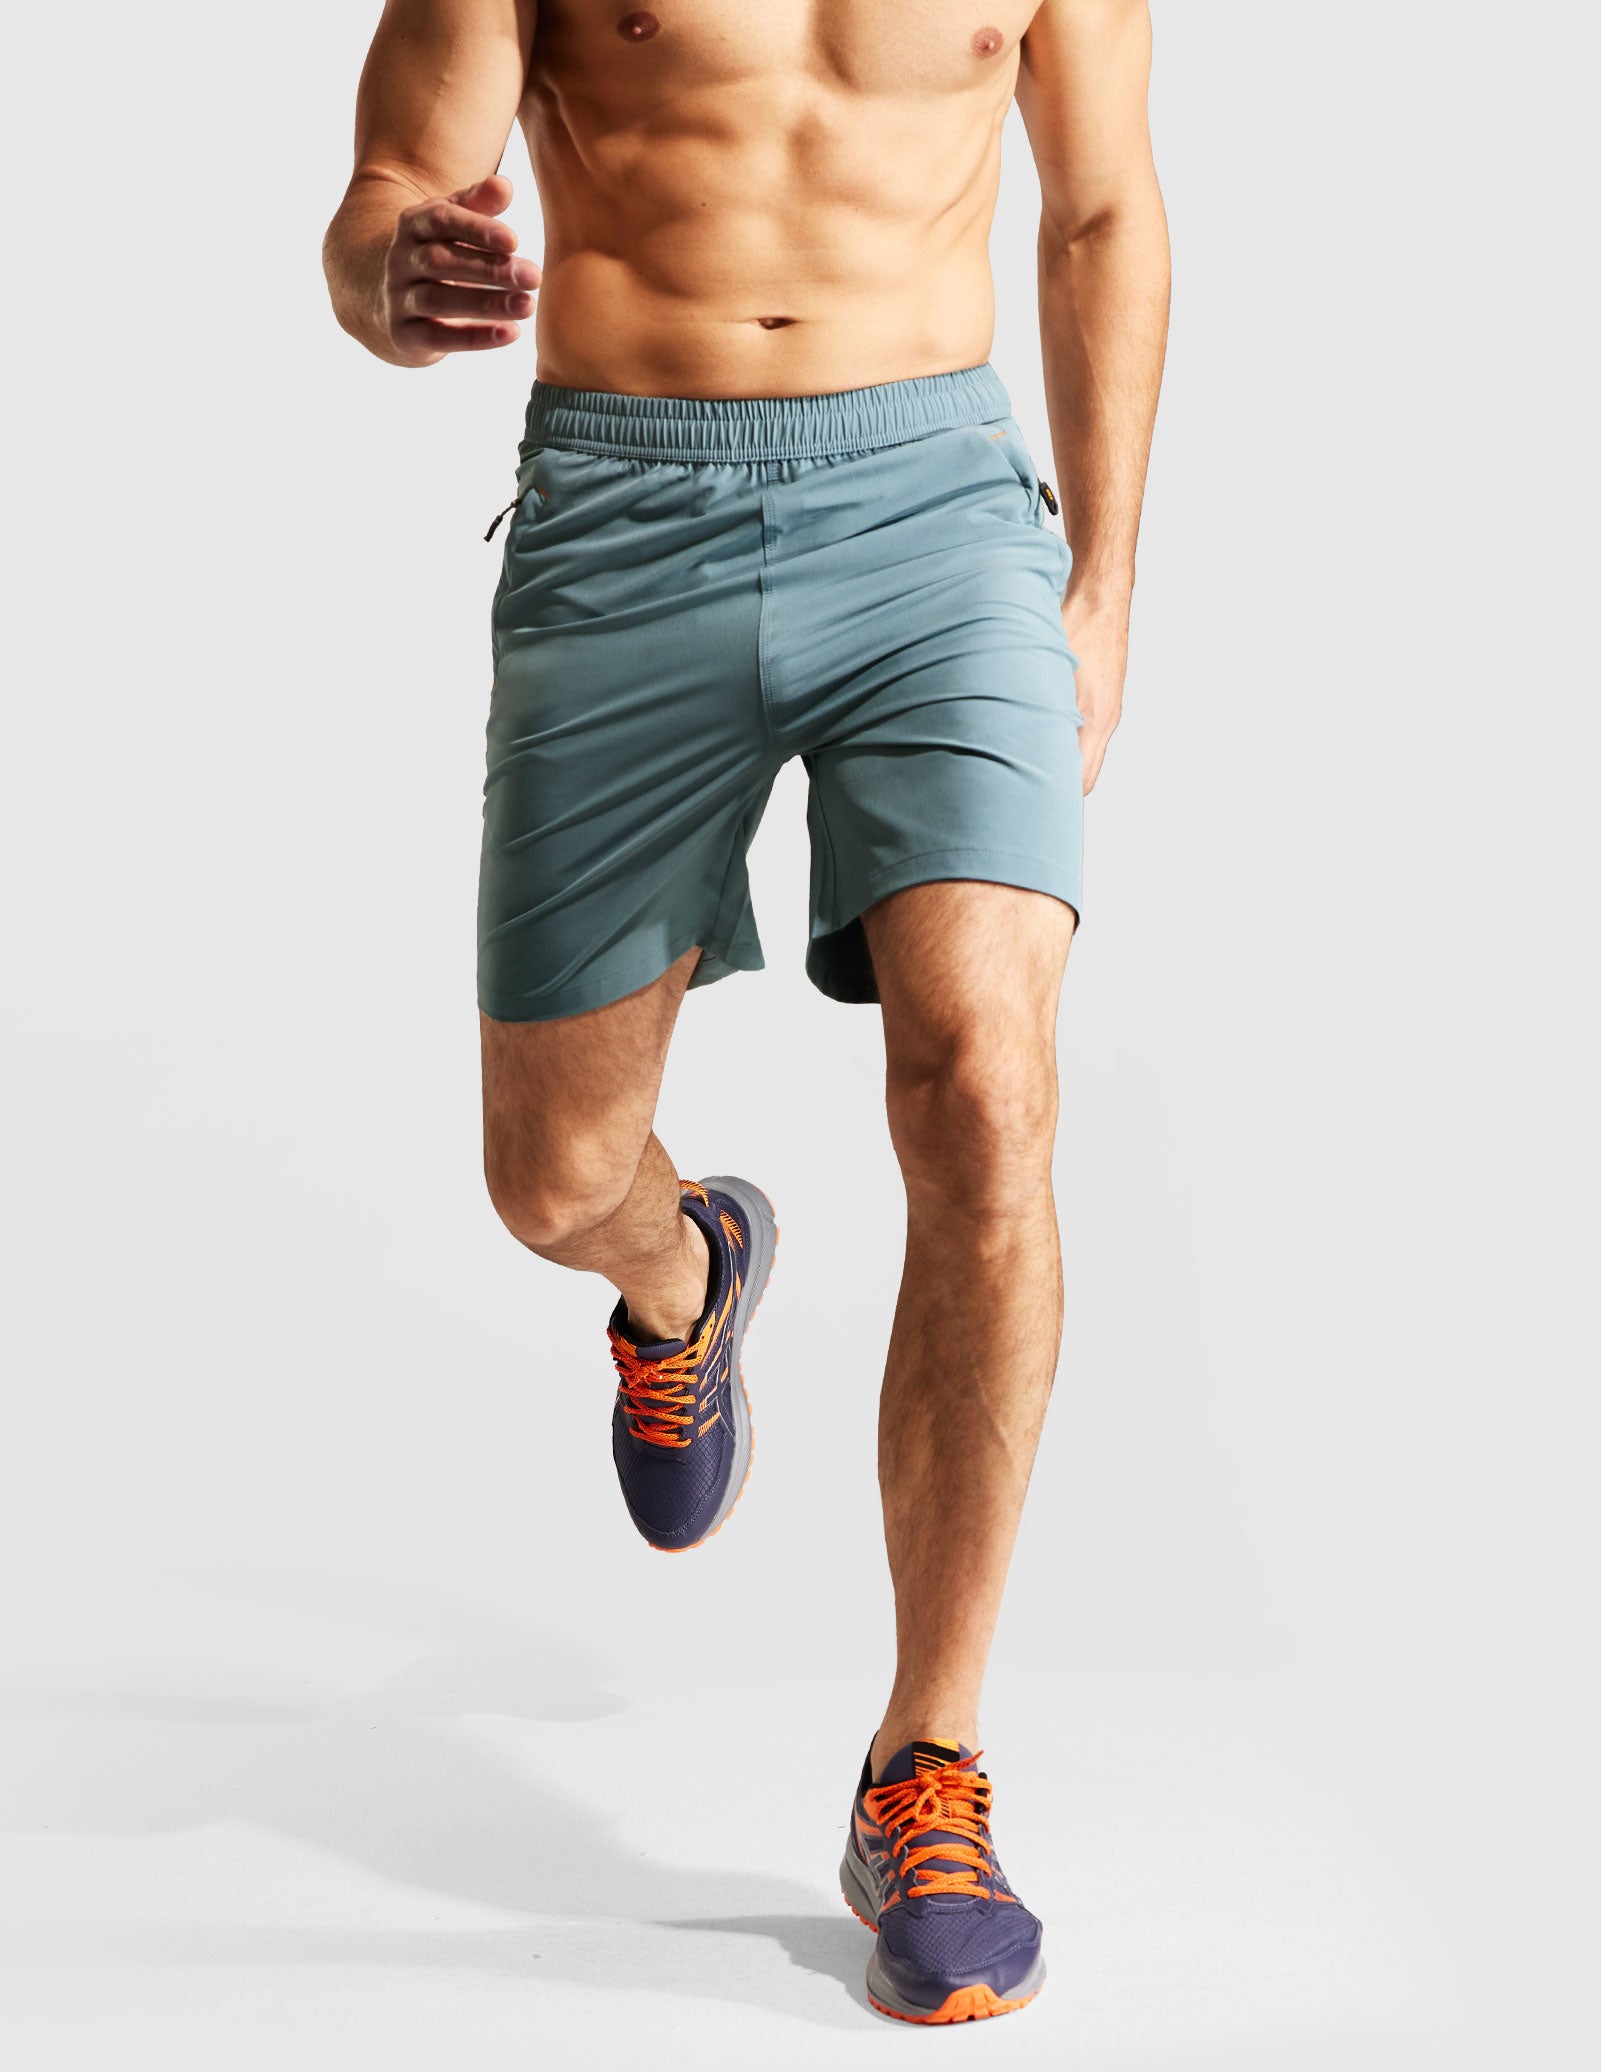 EVERWORTH - Shorts de entrenamiento para hombre, pantalones cortos de  entrenamiento ajustados para correr, con bolsillo con cremallera, en 3  colores